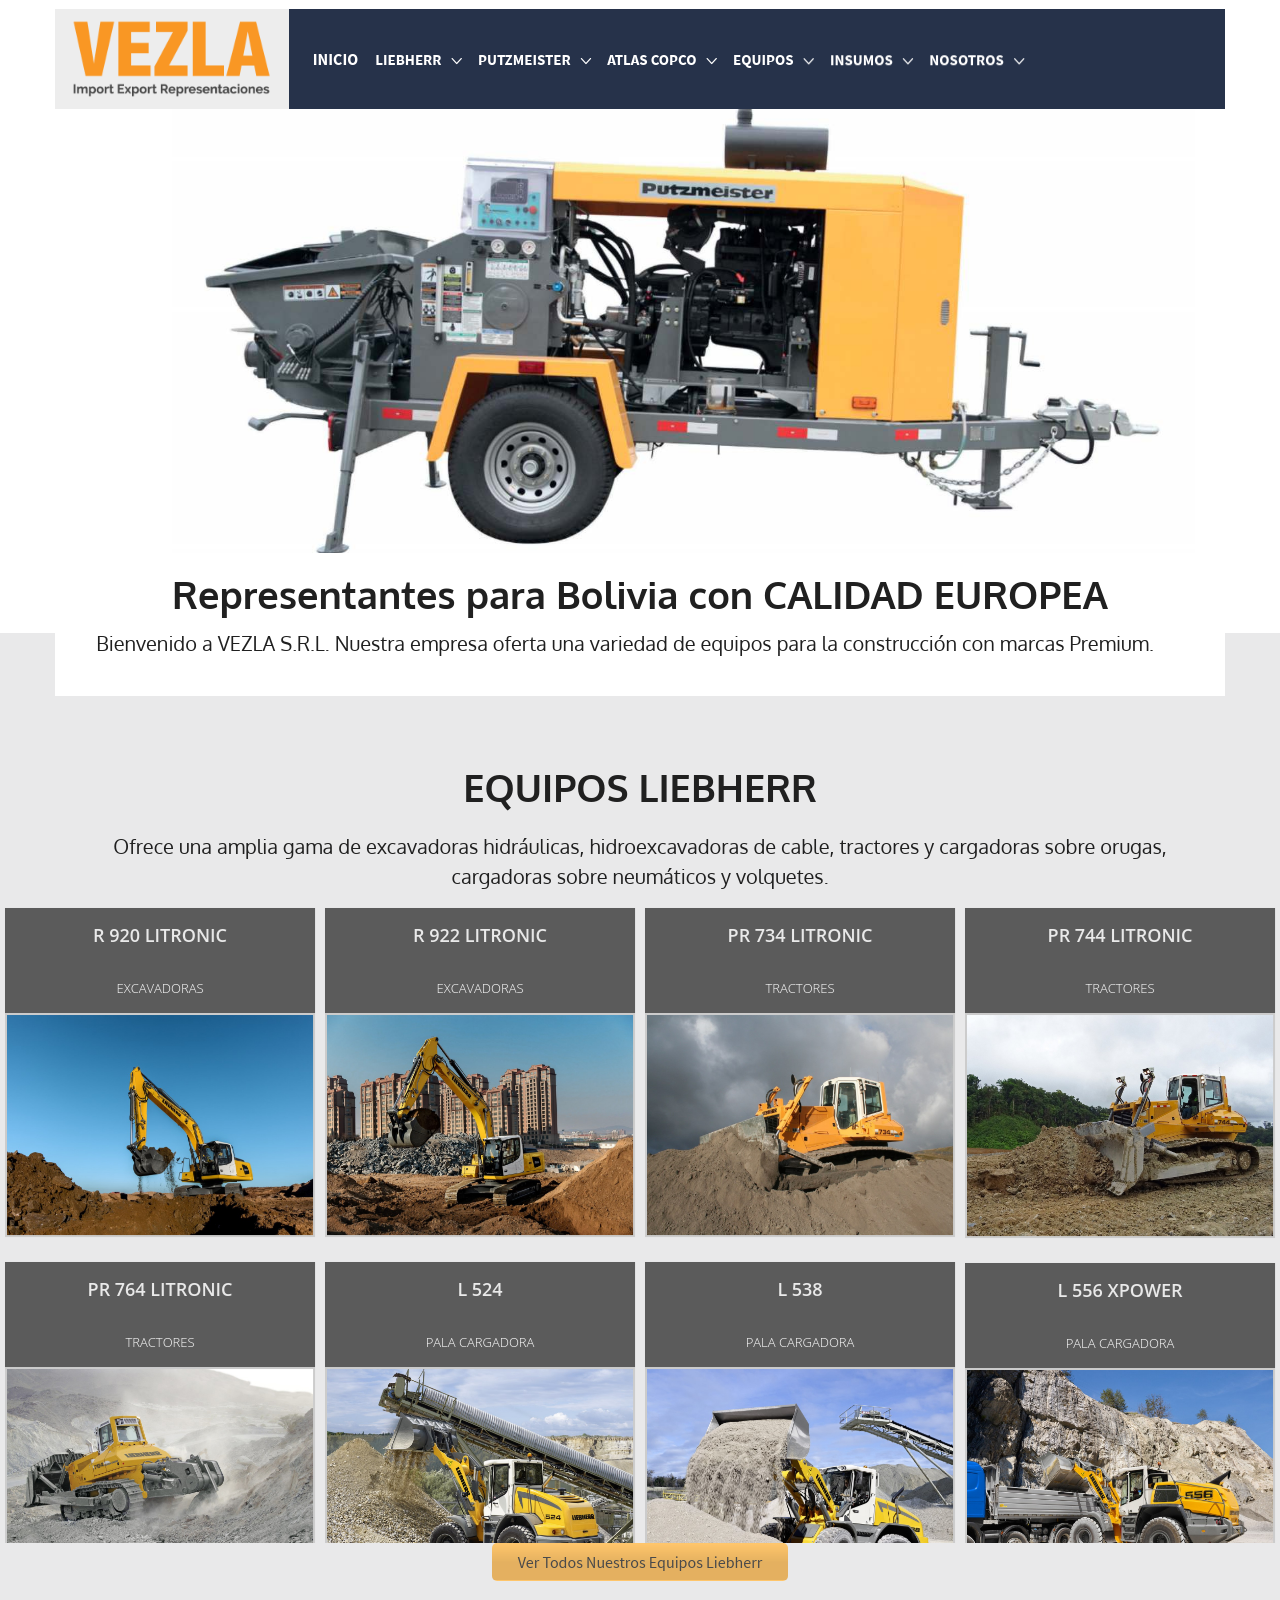 Vezla S.R.L. – Equipo Pesado e Insumos para la Construcción de Carreteras en Bolivia